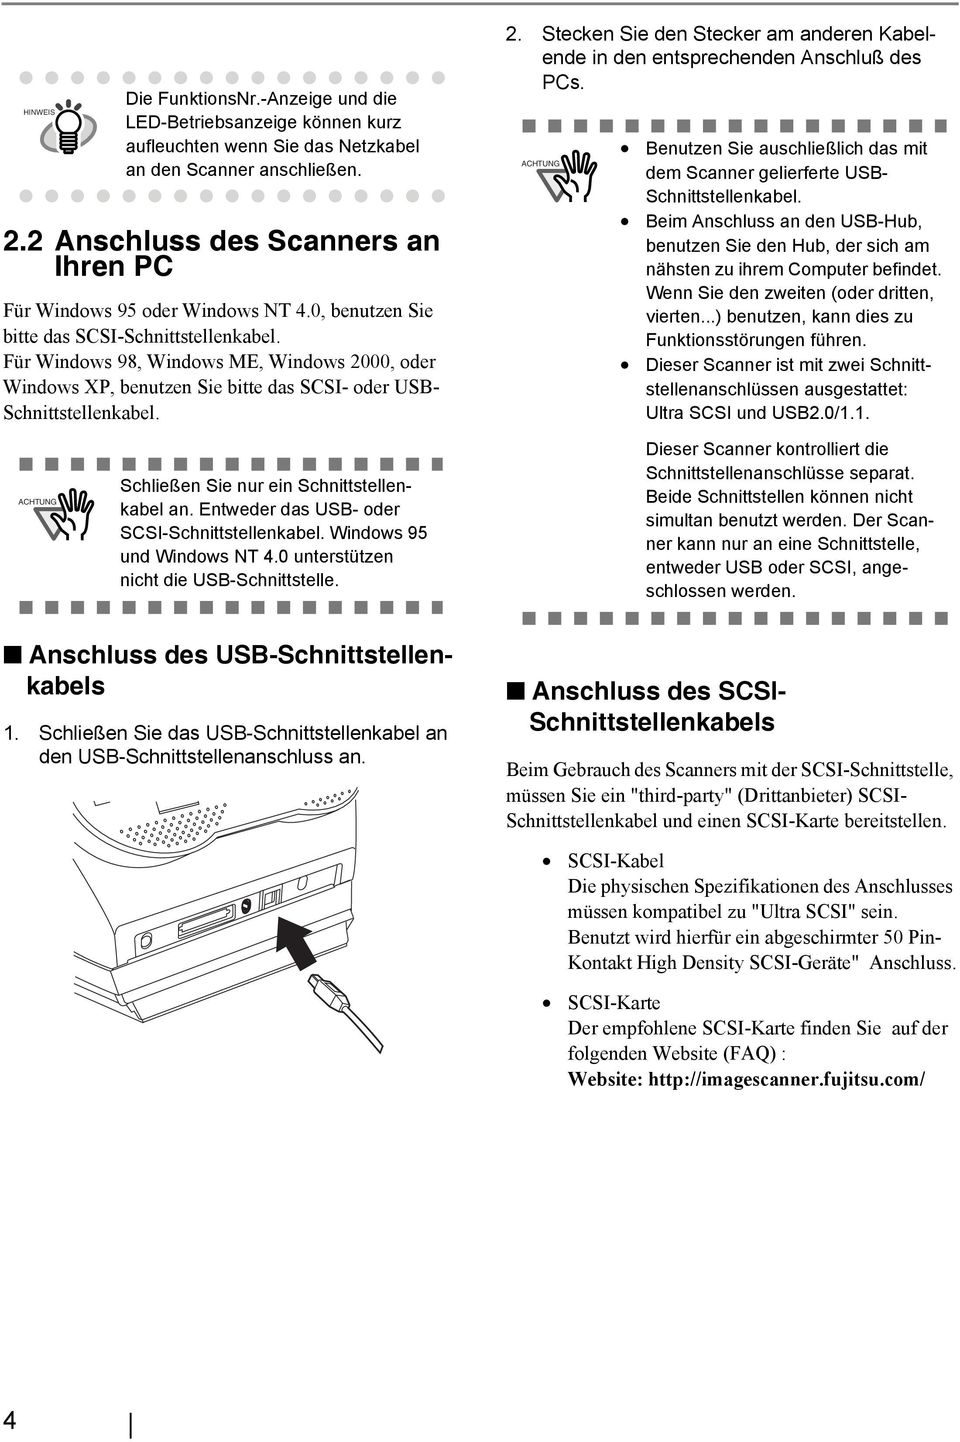 Für Windows 98, Windows ME, Windows 2000, oder Windows XP, benutzen Sie bitte das SCSI- oder USB- Schnittstellenkabel. 2. Stecken Sie den Stecker am anderen Kabelende in den entsprechenden Anschluß des PCs.